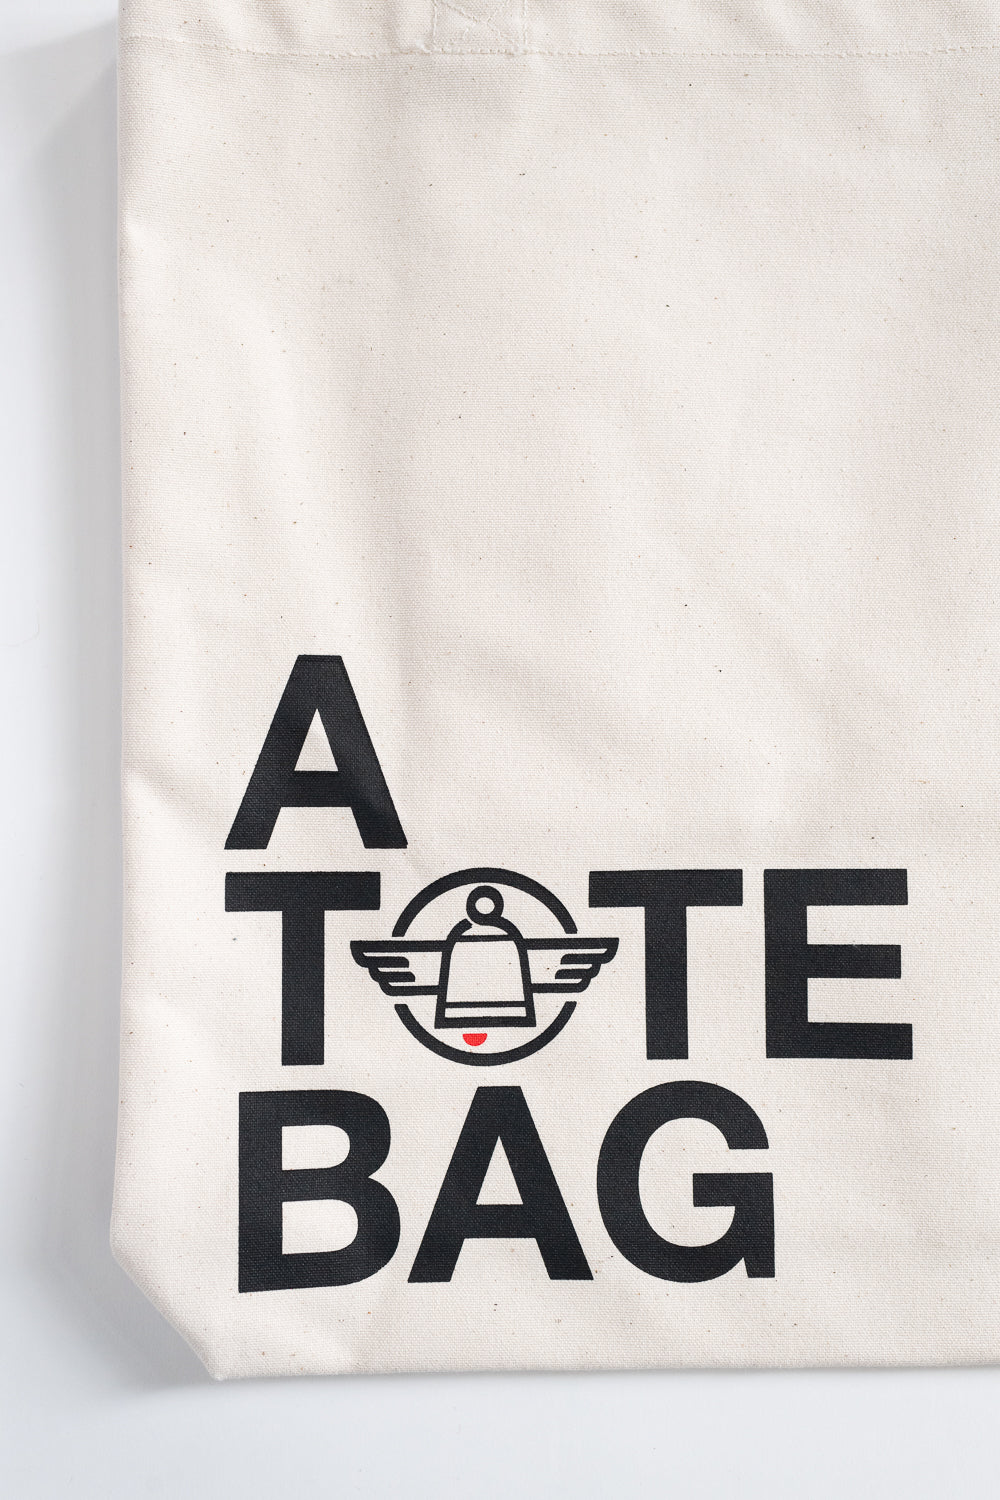 IH-TOTE-ATOTEBAG - Printed Canvas Tote Bag - 'A Tote Bag' Print